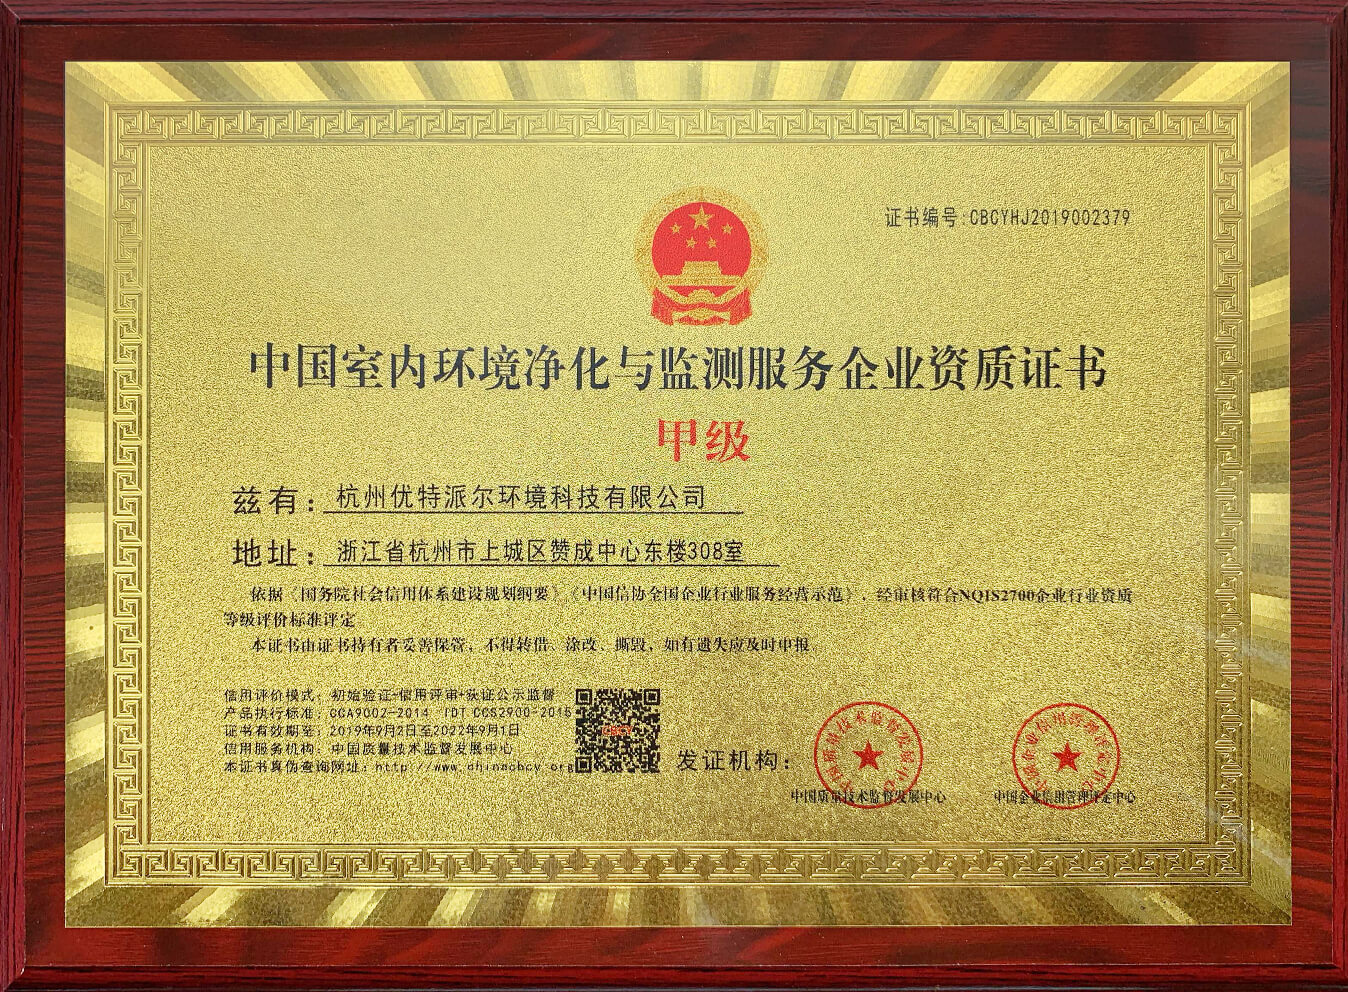 優特派爾-中國室內環境凈化與監測服務企業資質證書甲級